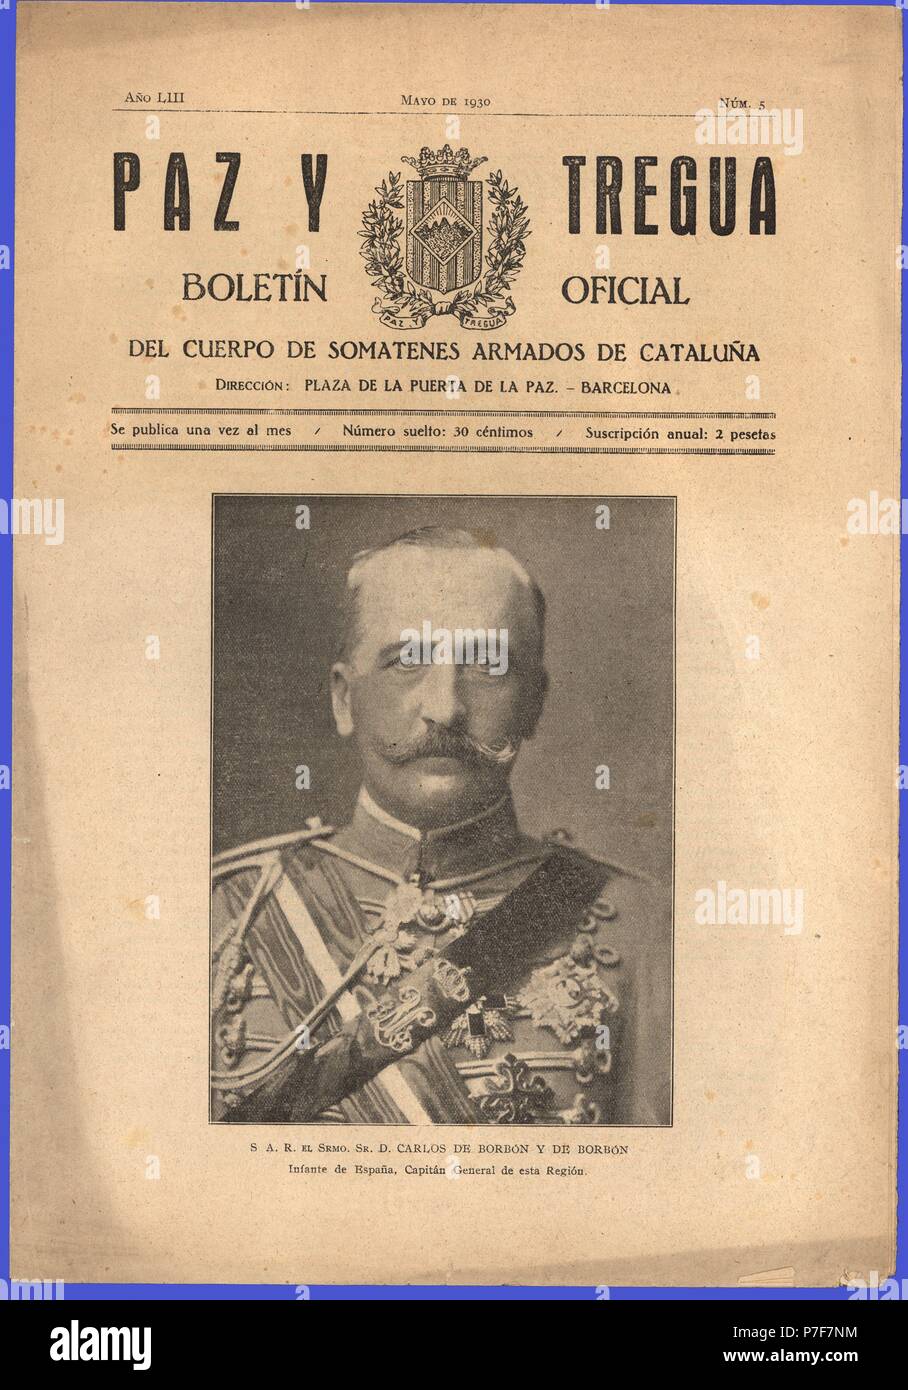 Portada de la revista Paz y Tregua, boletín mensual del cuerpo de somatenes de Catalunya. Año 1930. Stock Photo